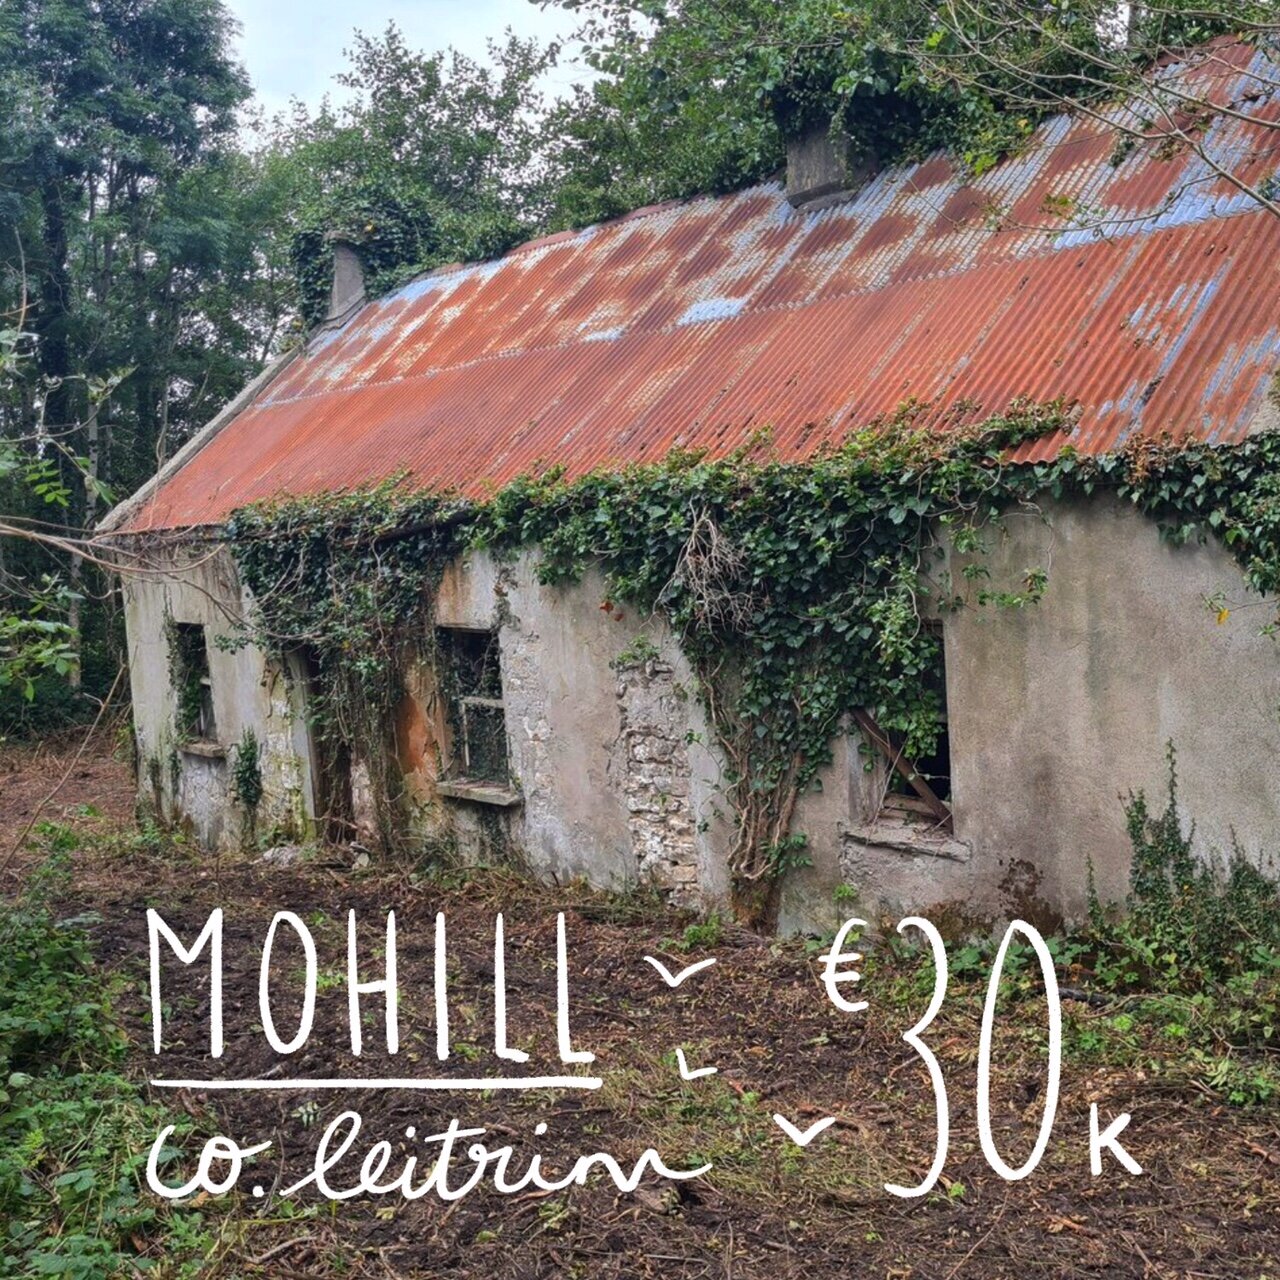 Mohill, Co. Leitrim. €30k